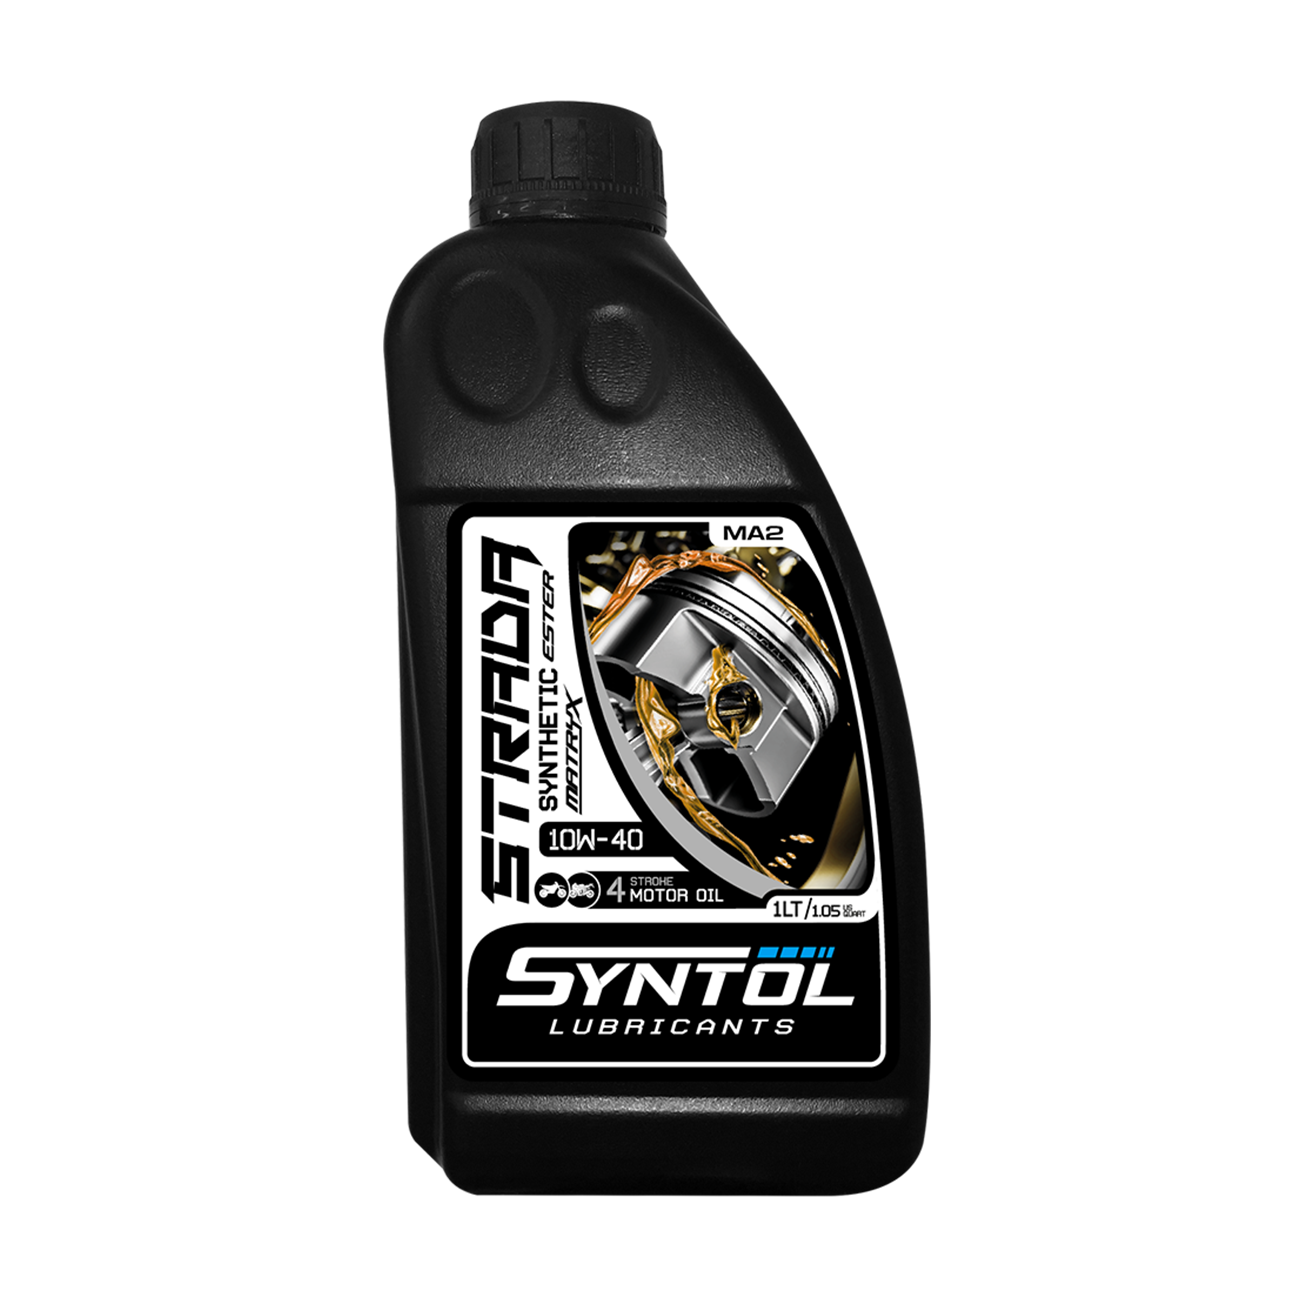 Semi-Synthetic Oil 1L